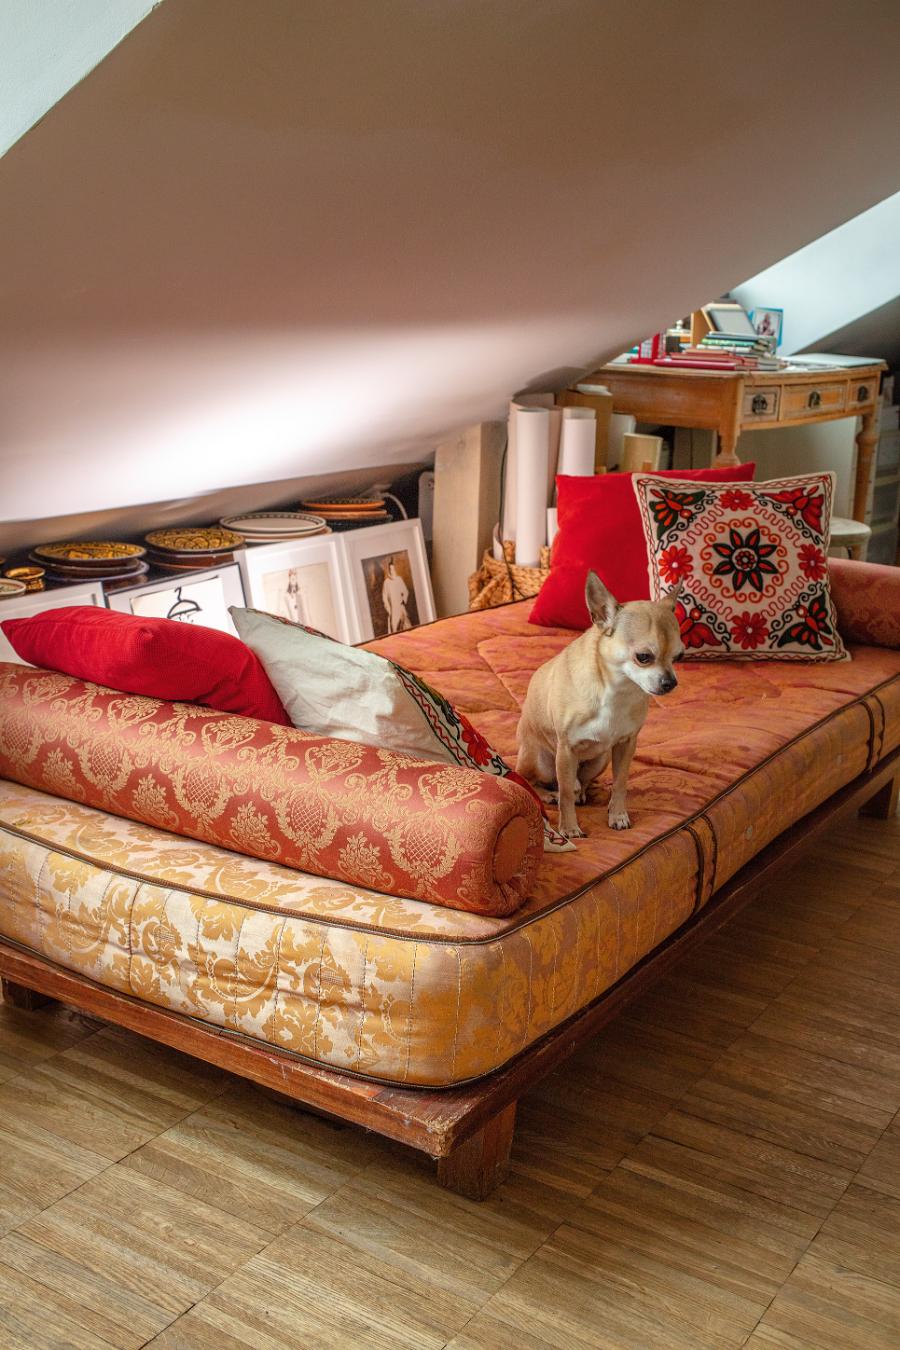 Secesyjna sofa to strefa relaksu. Na jej tapicerce wciąż widać ślady kota, ale teraz wypoczywa tu pies. (Fot. Robby Cyron)